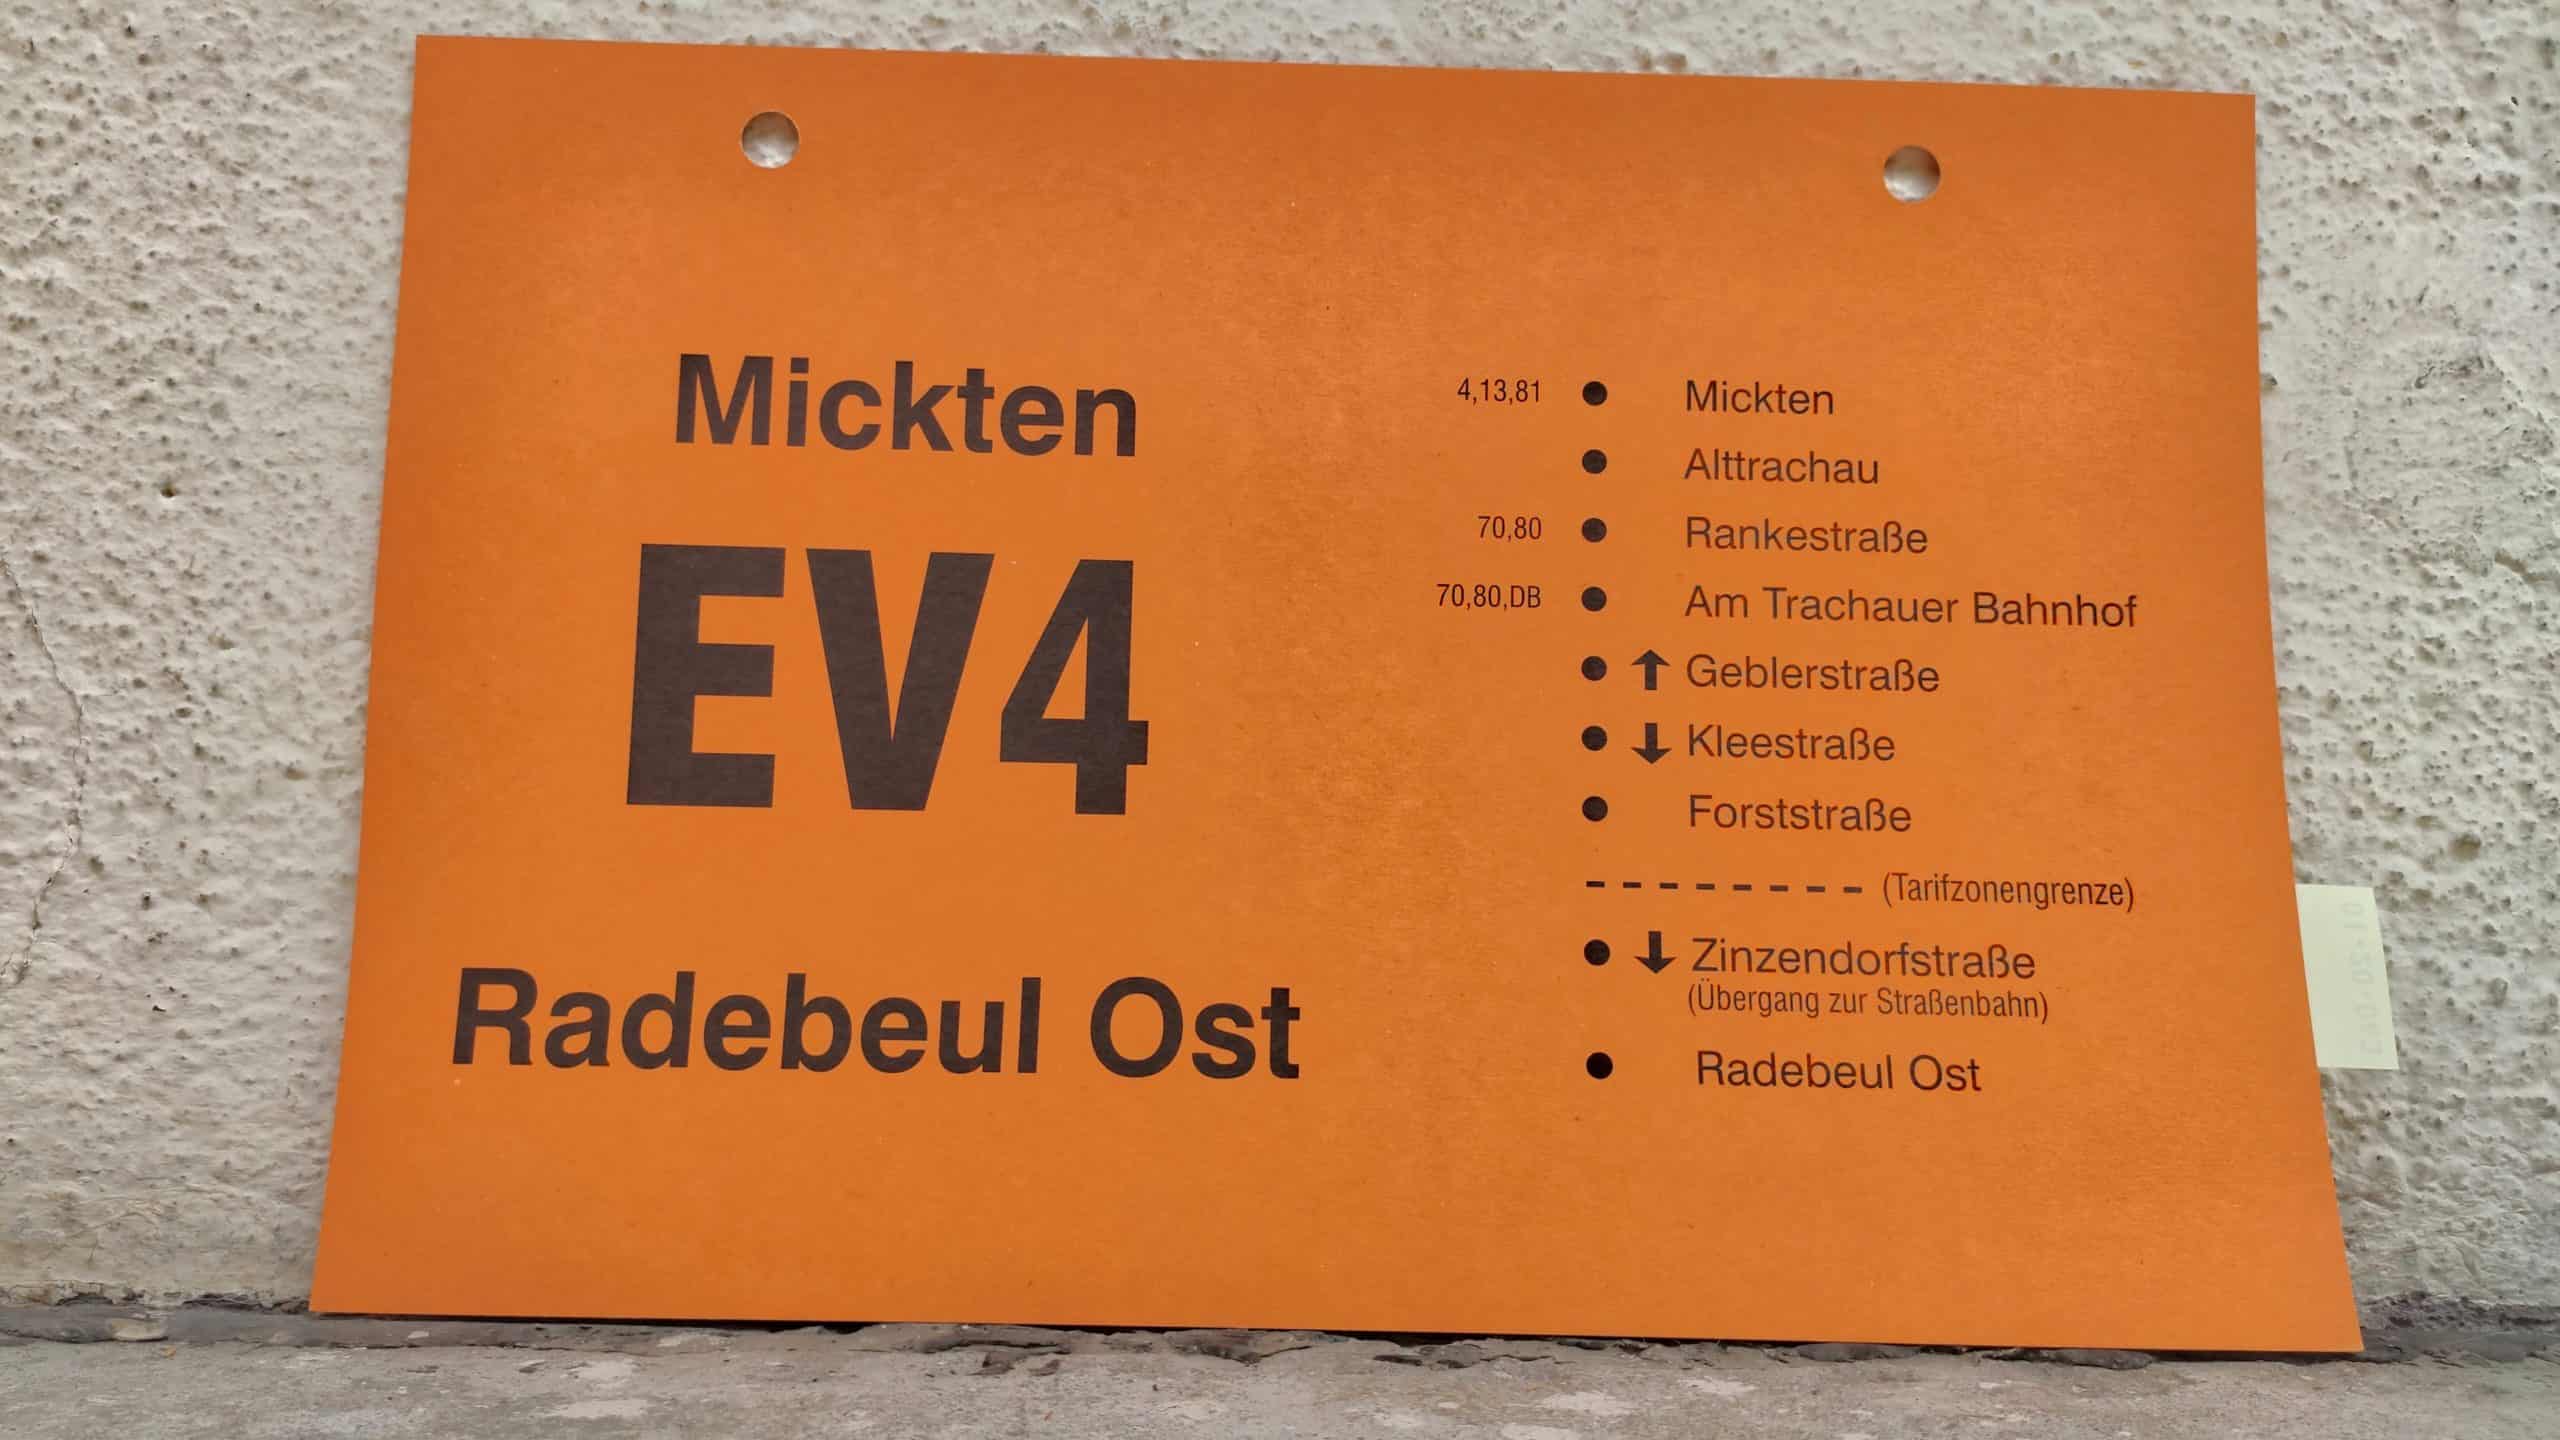 EV 4 Mickten – Radebeul Ost #2